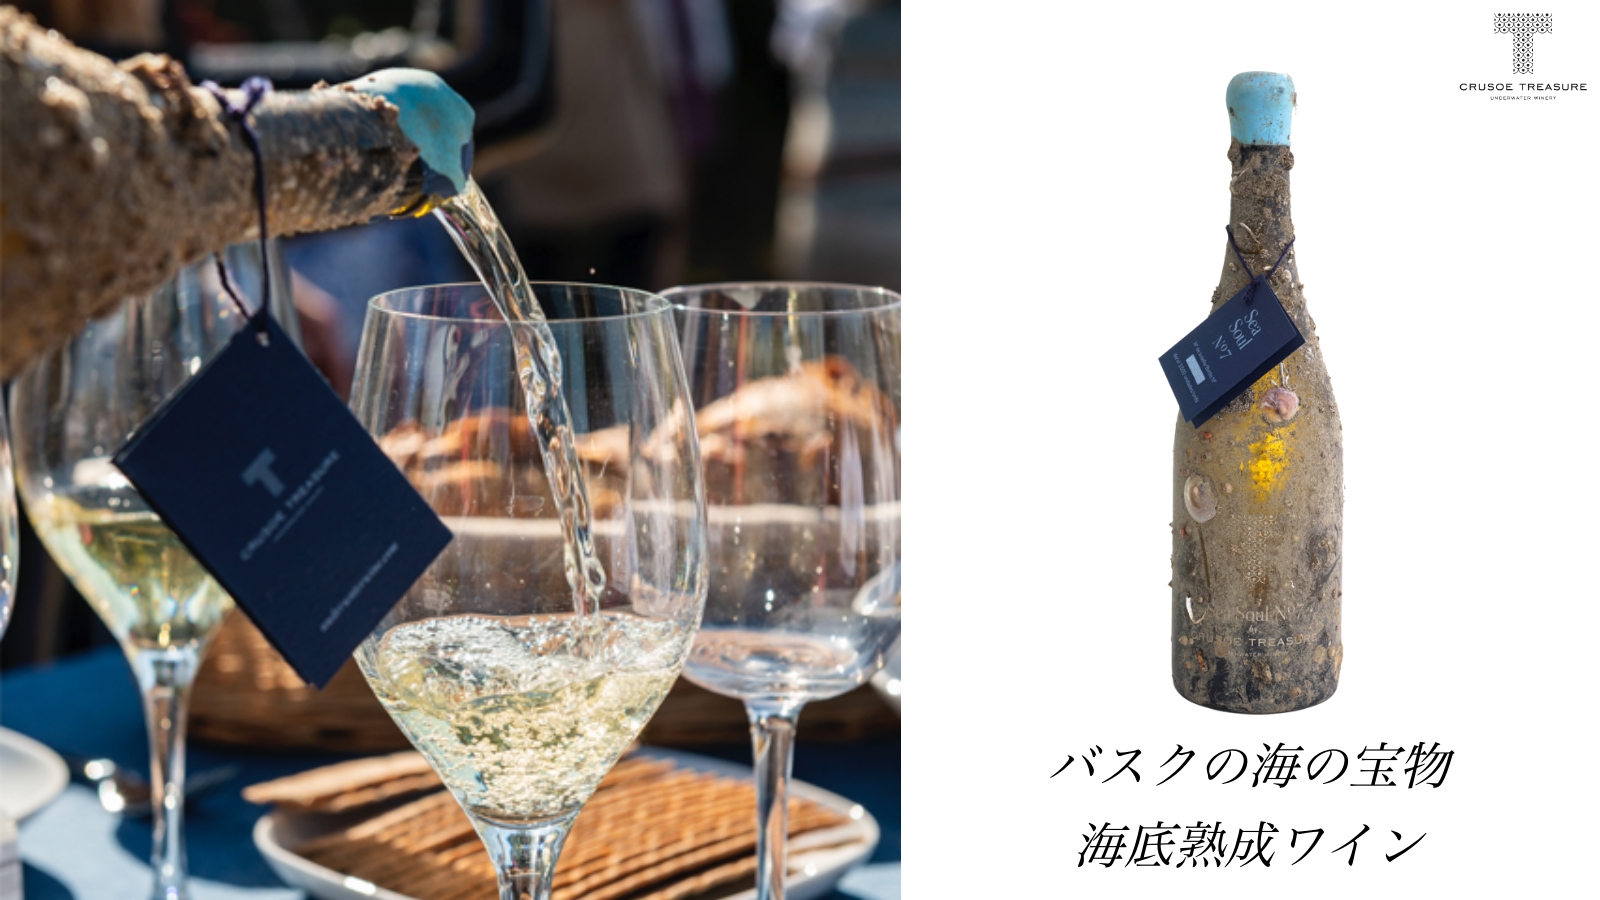 世界初の海底熟成ワイン スペイン バスク地方から日本上陸 応援購入サービス Makuake にて先行販売を開始 株式会社テッレのプレスリリース